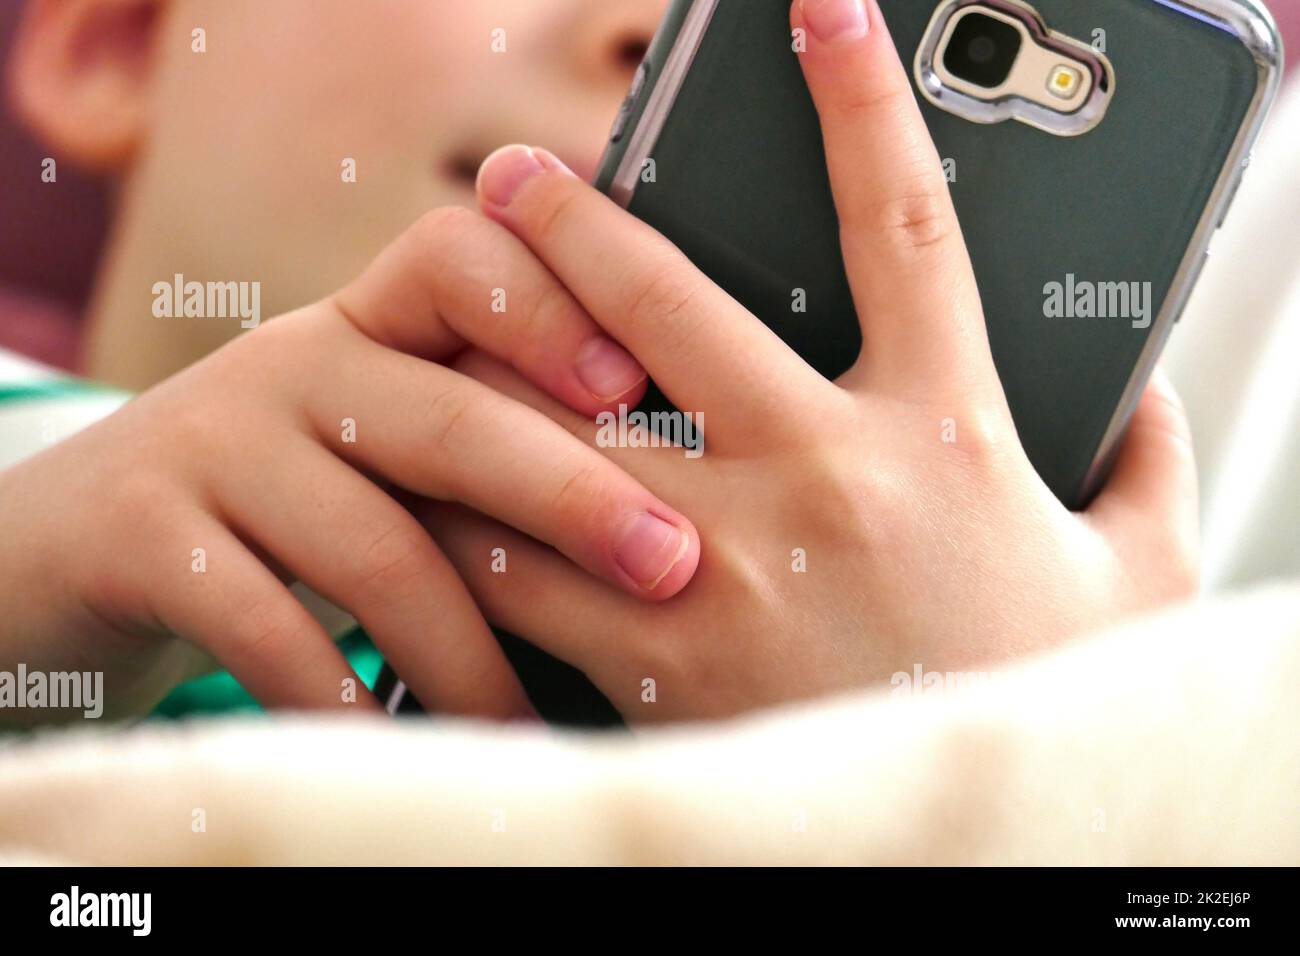 Der Umgang mit einem Smartphone ist für Kinder eine äußerst schädliche Gewohnheit. Stockfoto